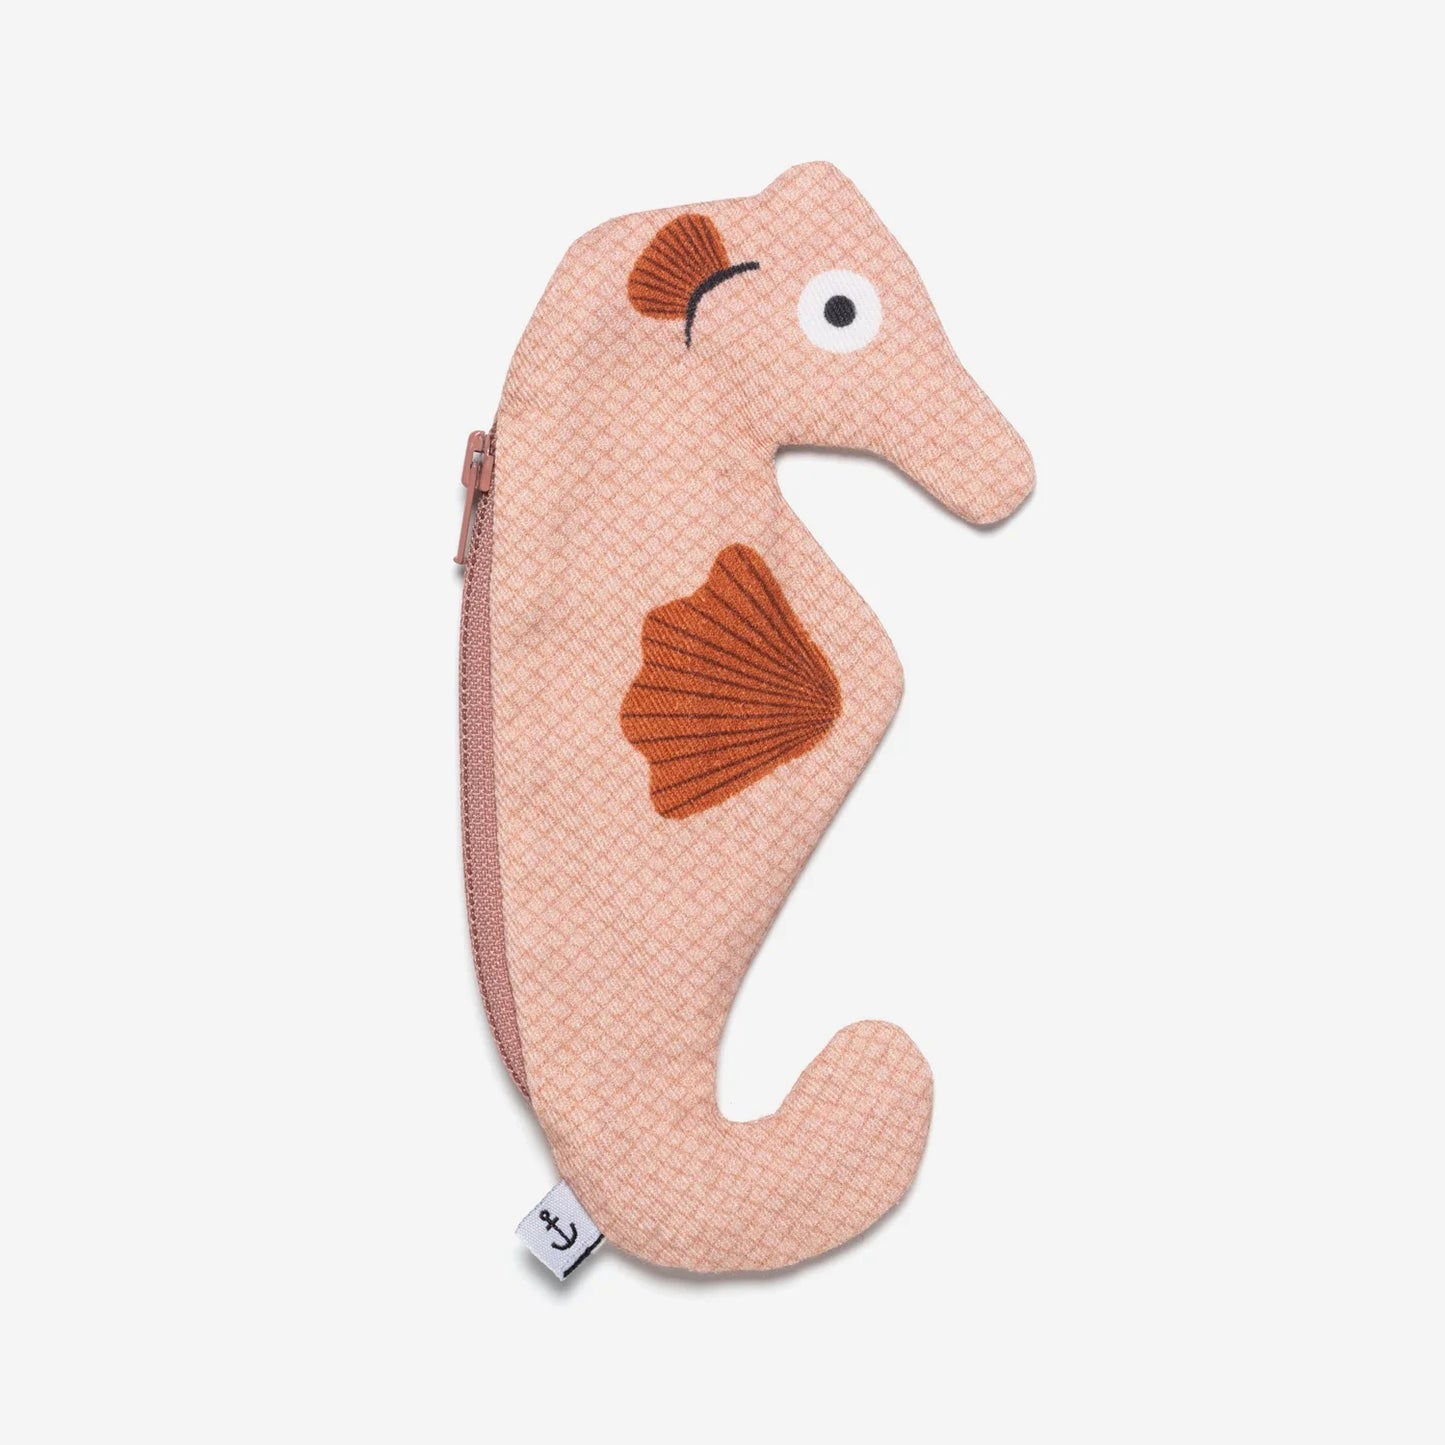 Seahorse - Pink Keychain